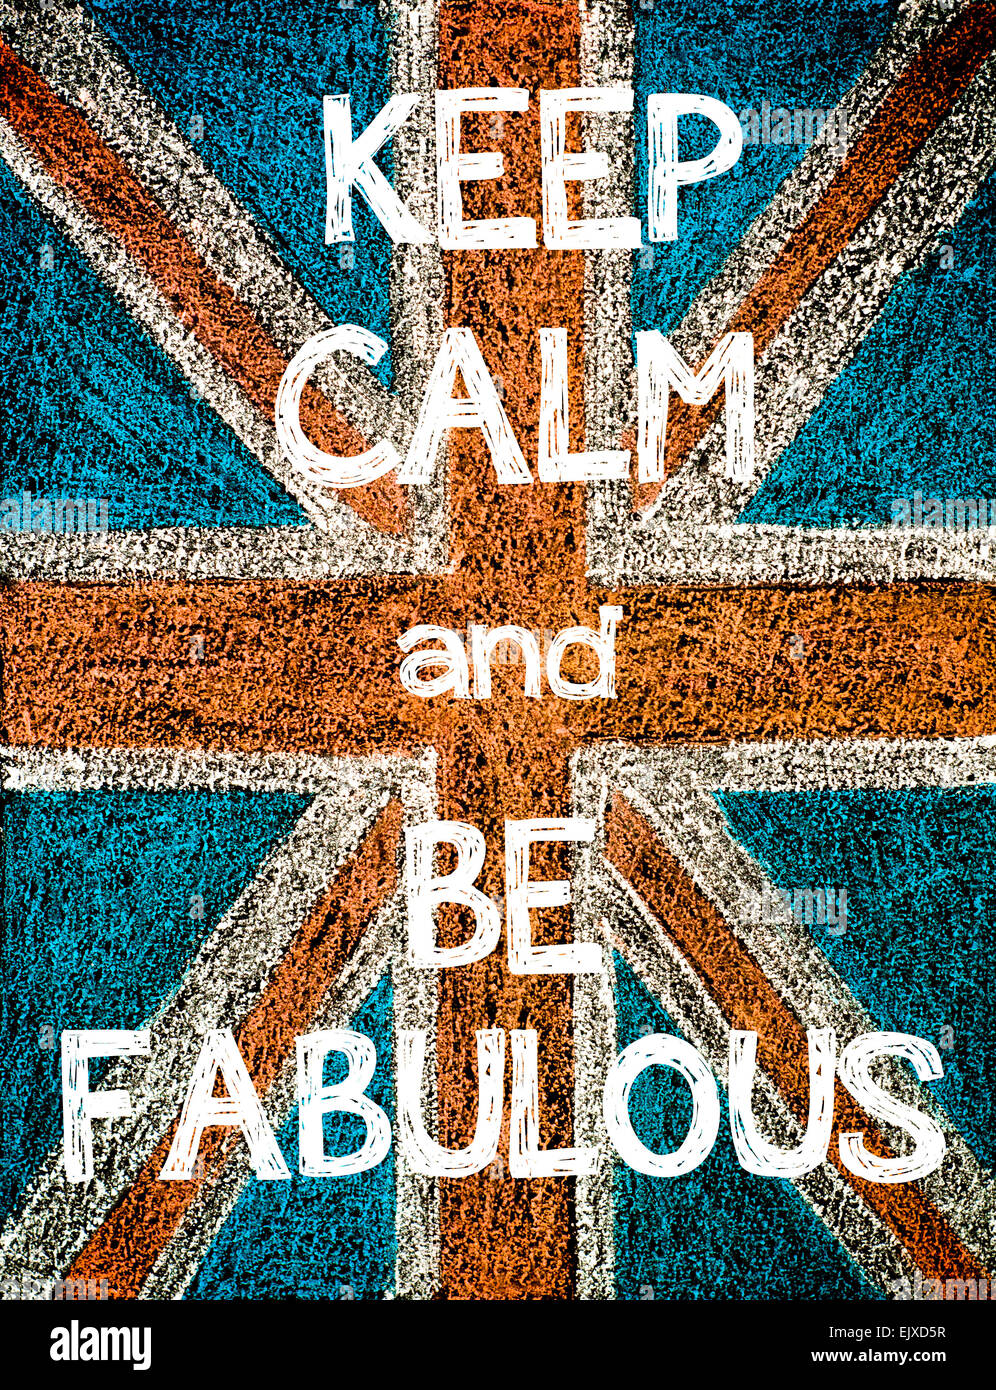 Mantener la calma y ser fabuloso. Reino Unido (British Union Jack) bandera, vintage de dibujo a mano alzada con tiza en el pizarrón, humor imagen concepto Foto de stock